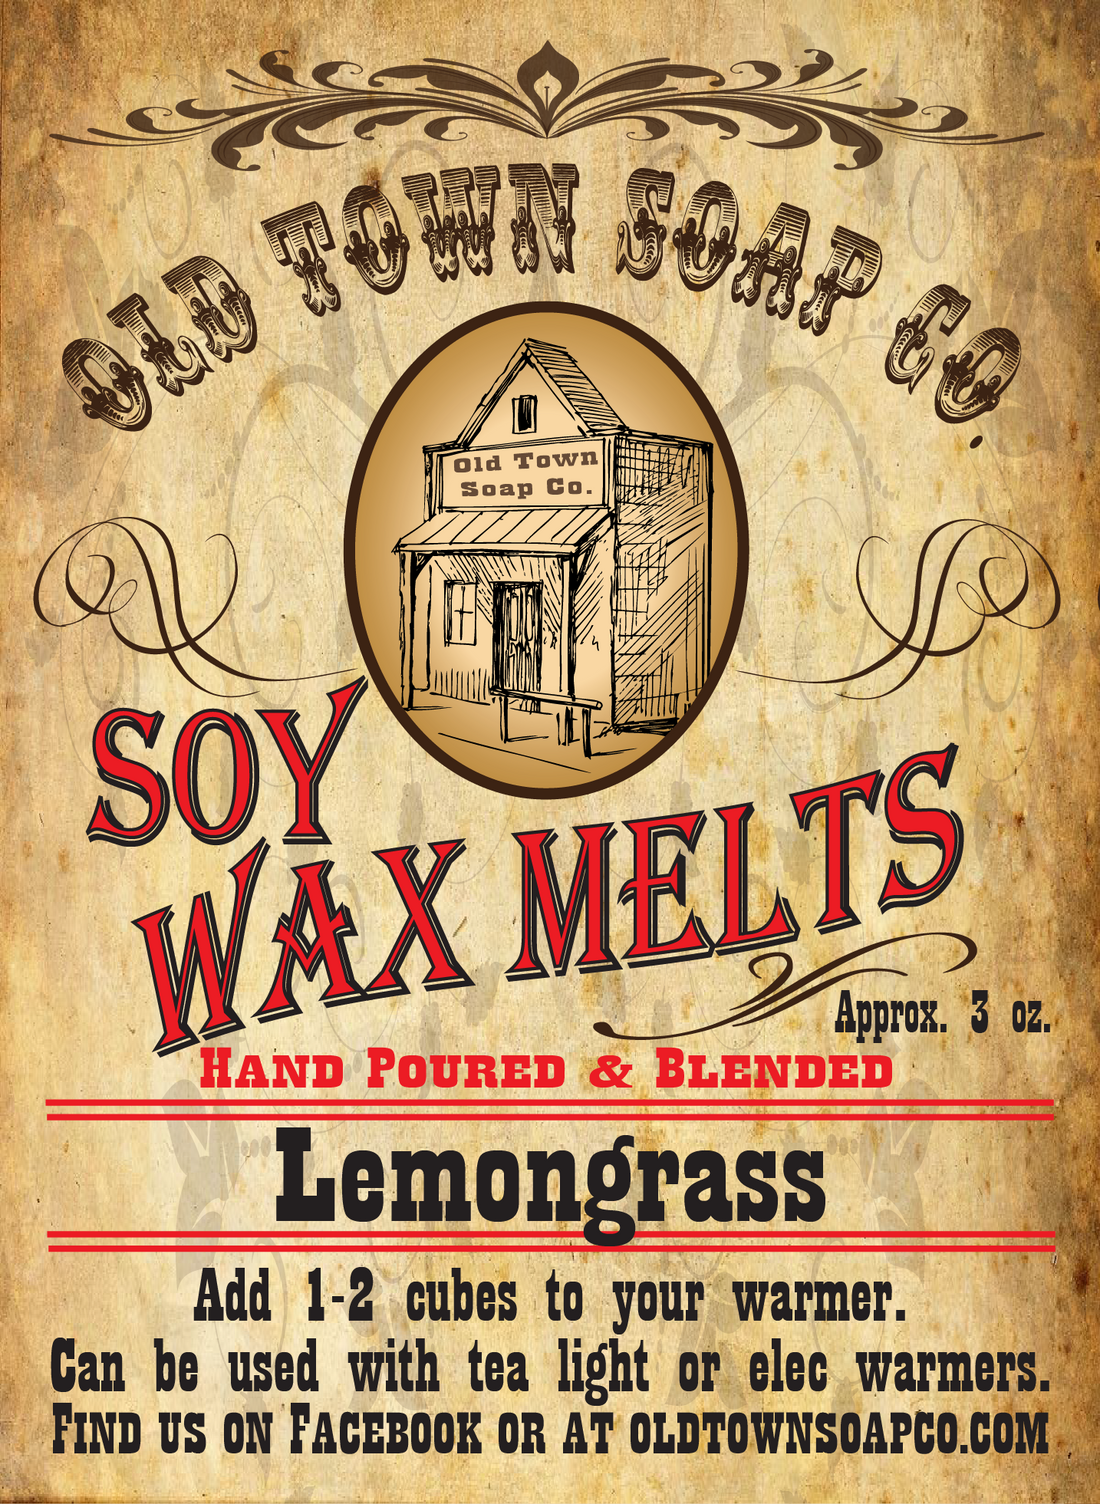 Lemongrass Wax Melts